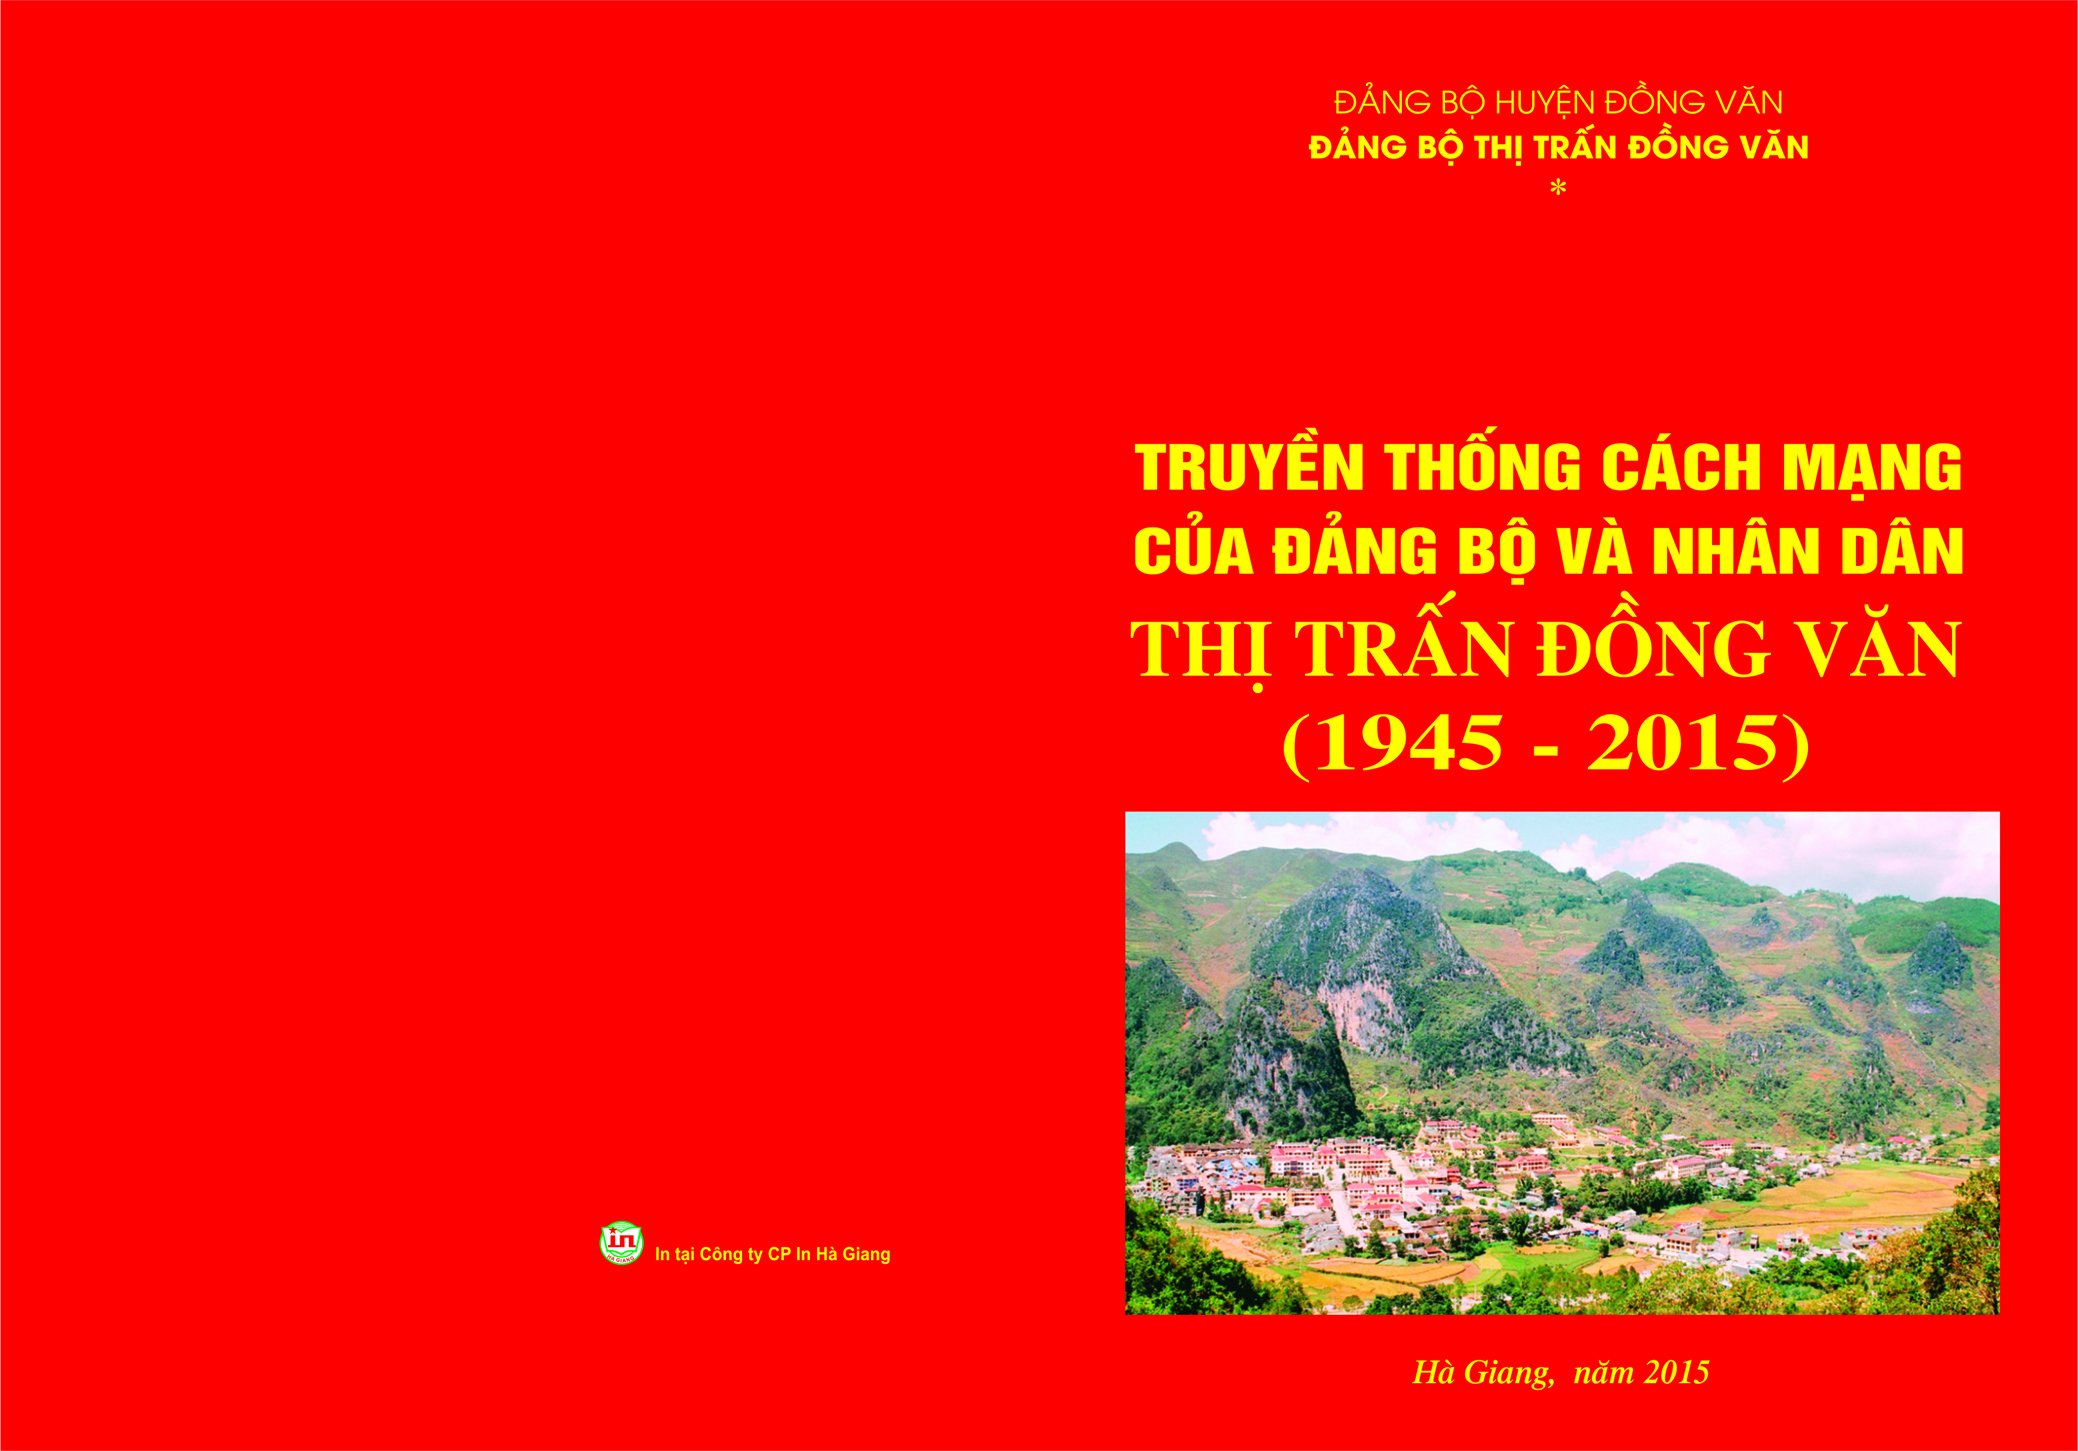 Truyền thống cách mạng của Đảng bộ và nhân dân thị trấn Đồng Văn